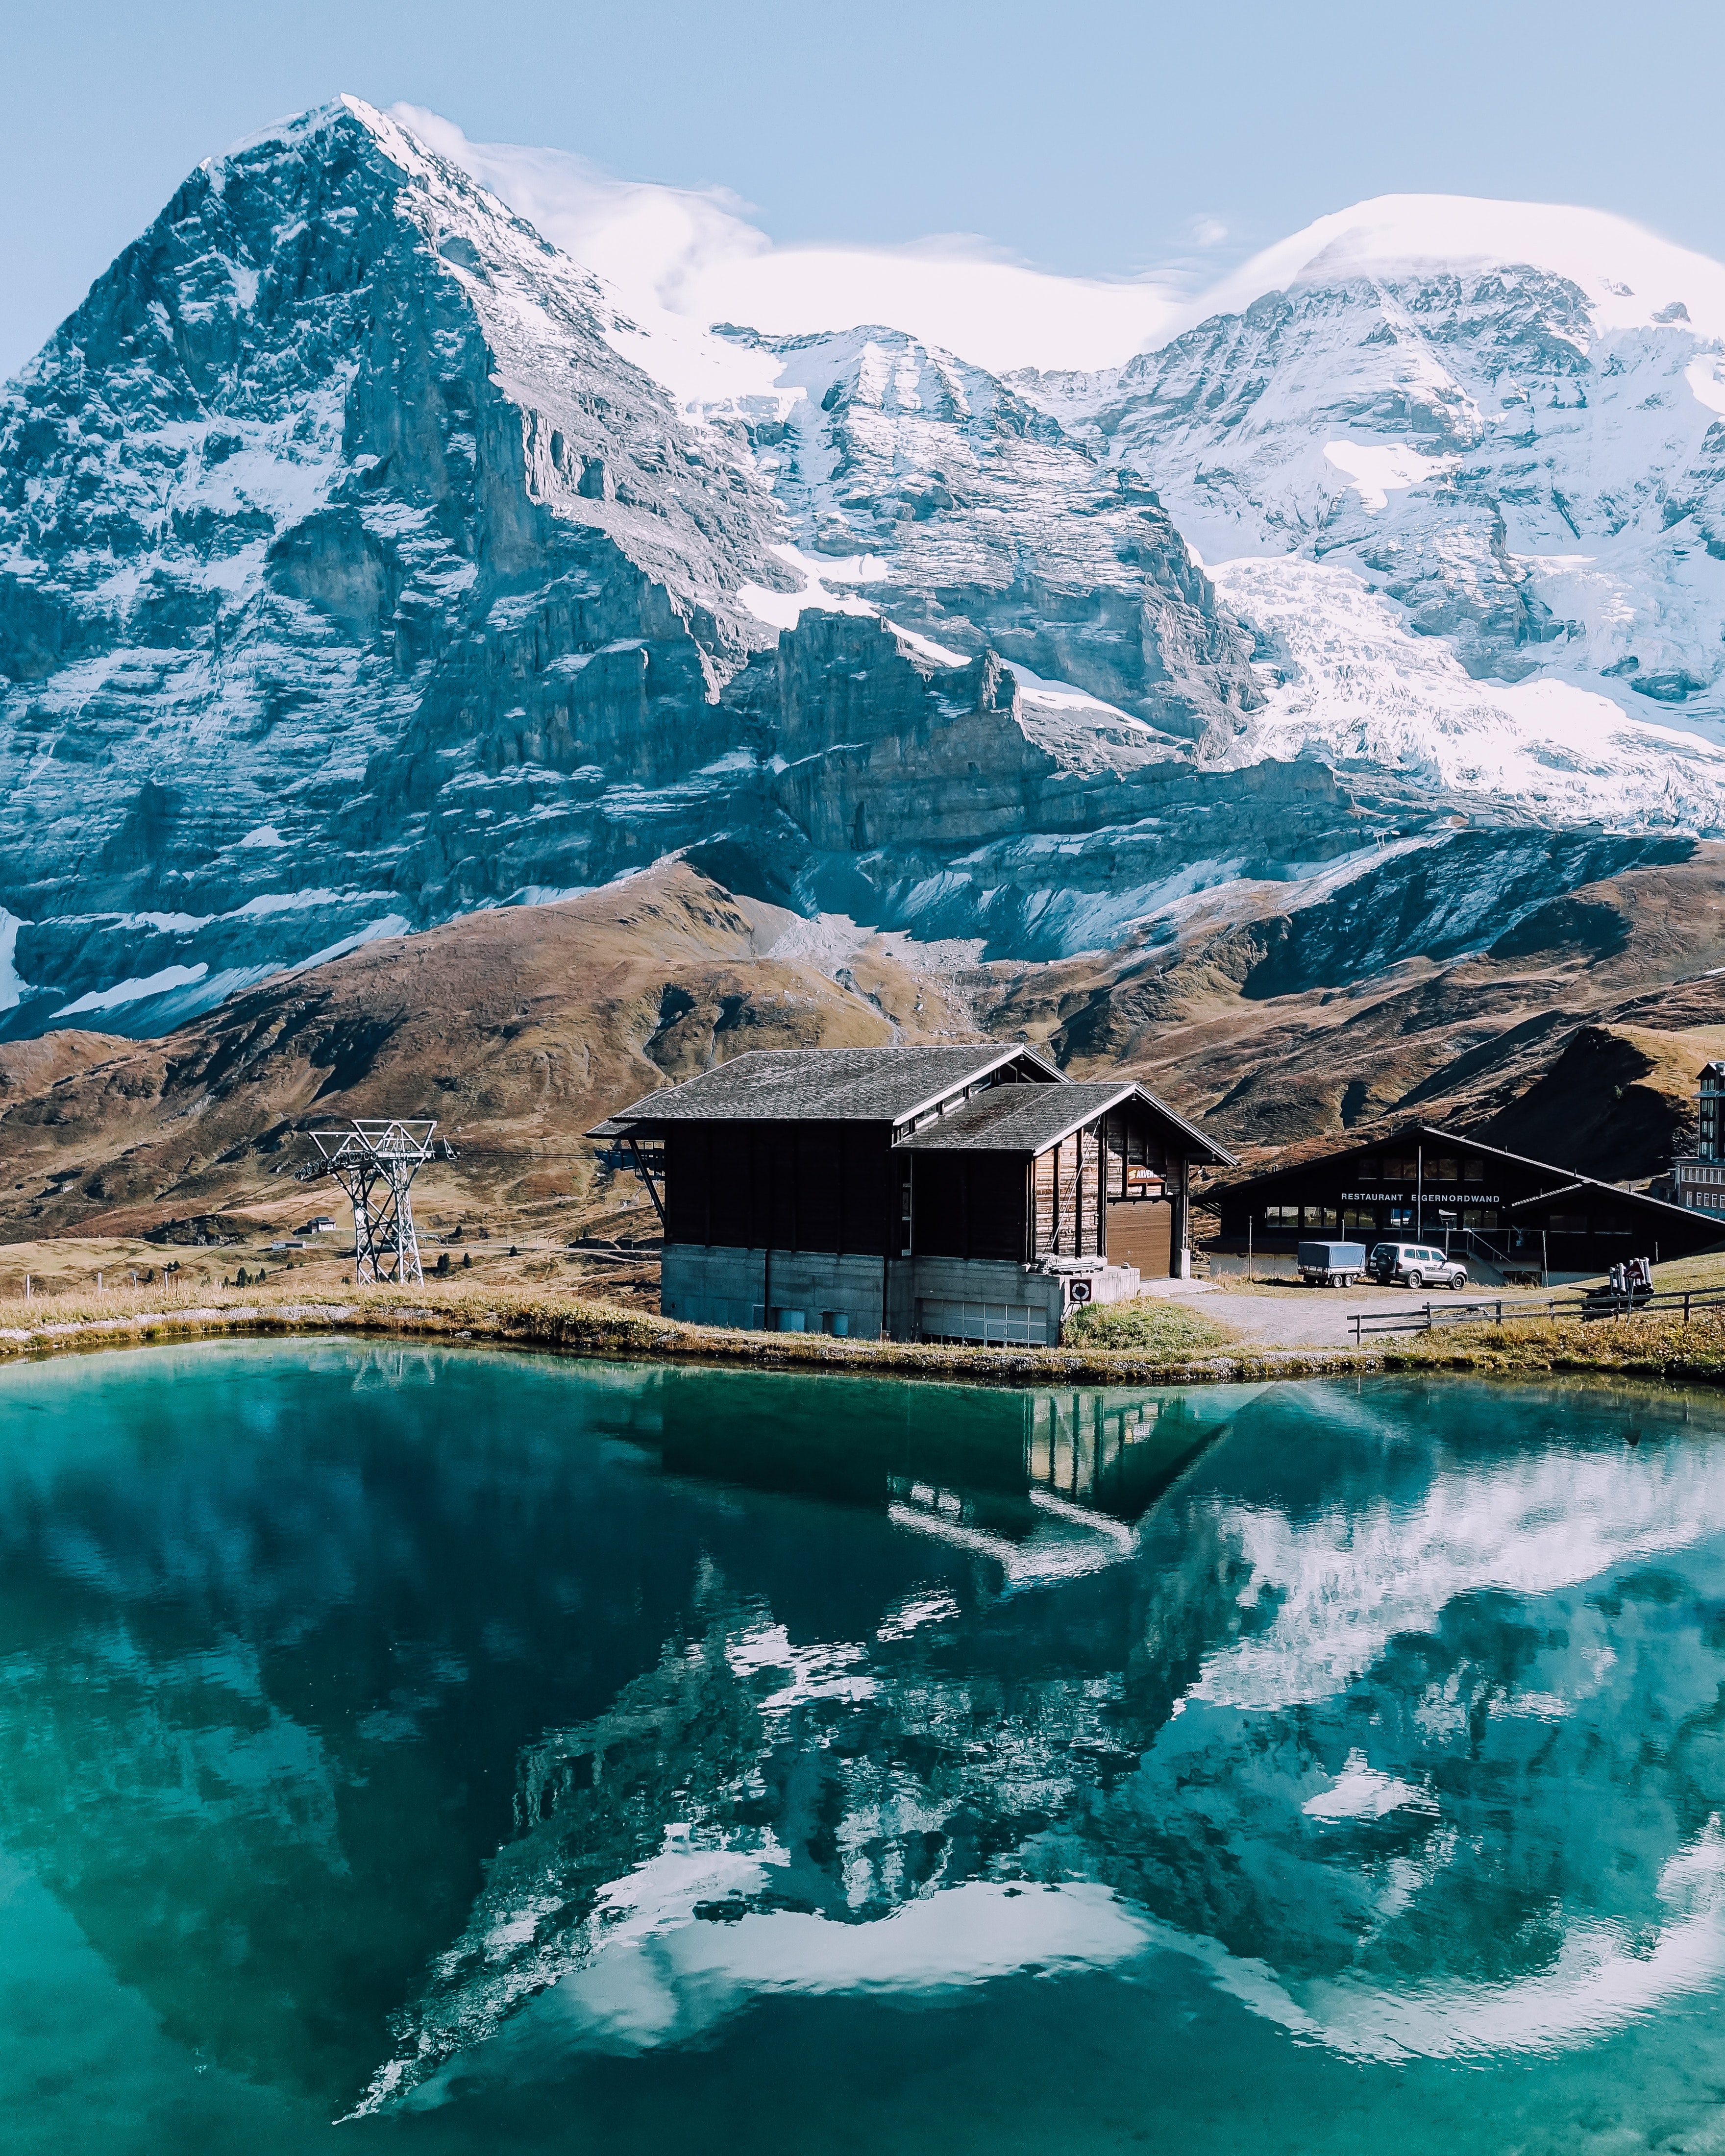 Best Switzerland Photo · 100% Free Downloads